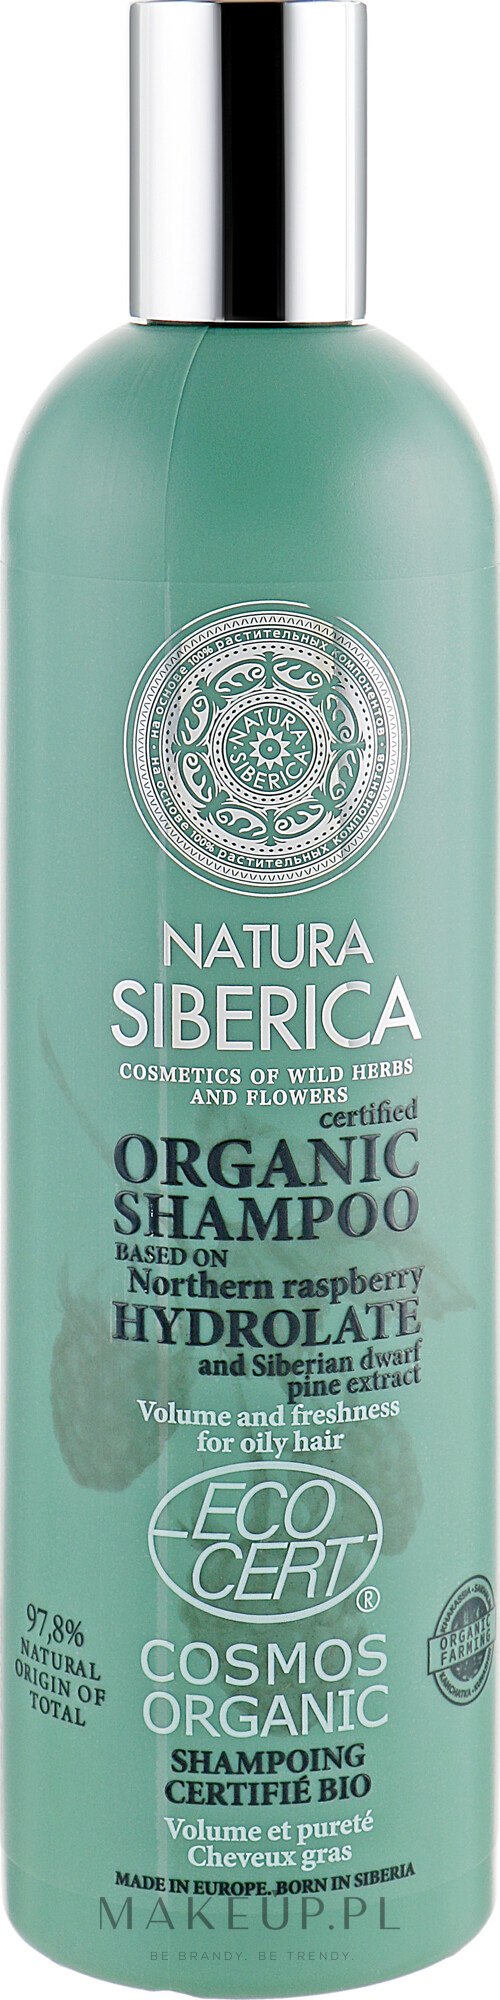 szampon ziołowy natura